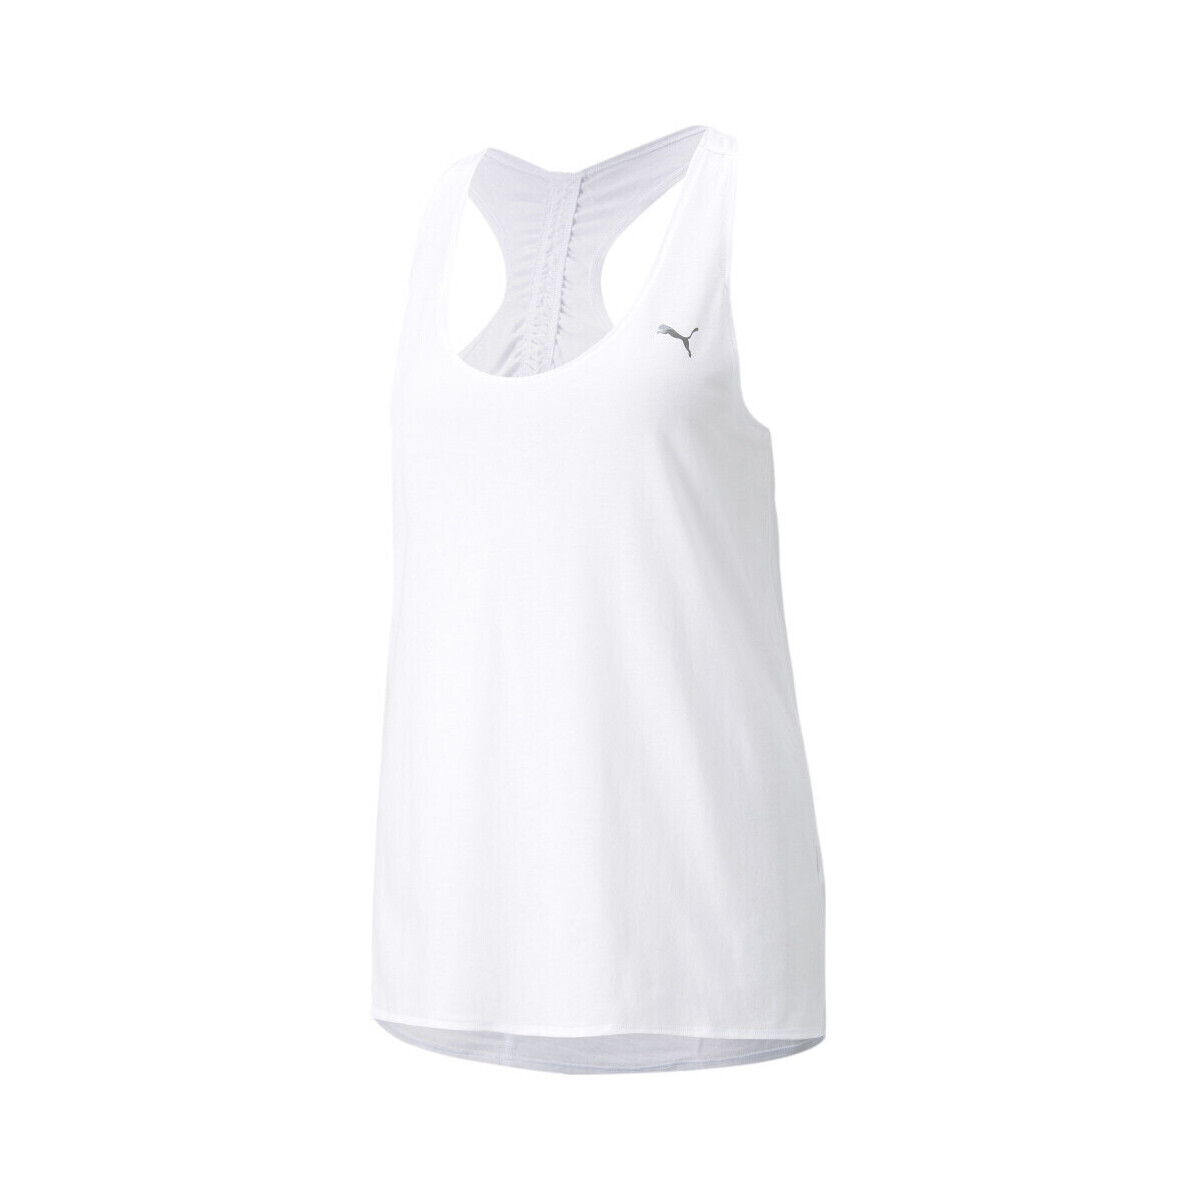 Vêtements Femme Débardeurs / T-shirts sans manche Puma 521605-02 Blanc